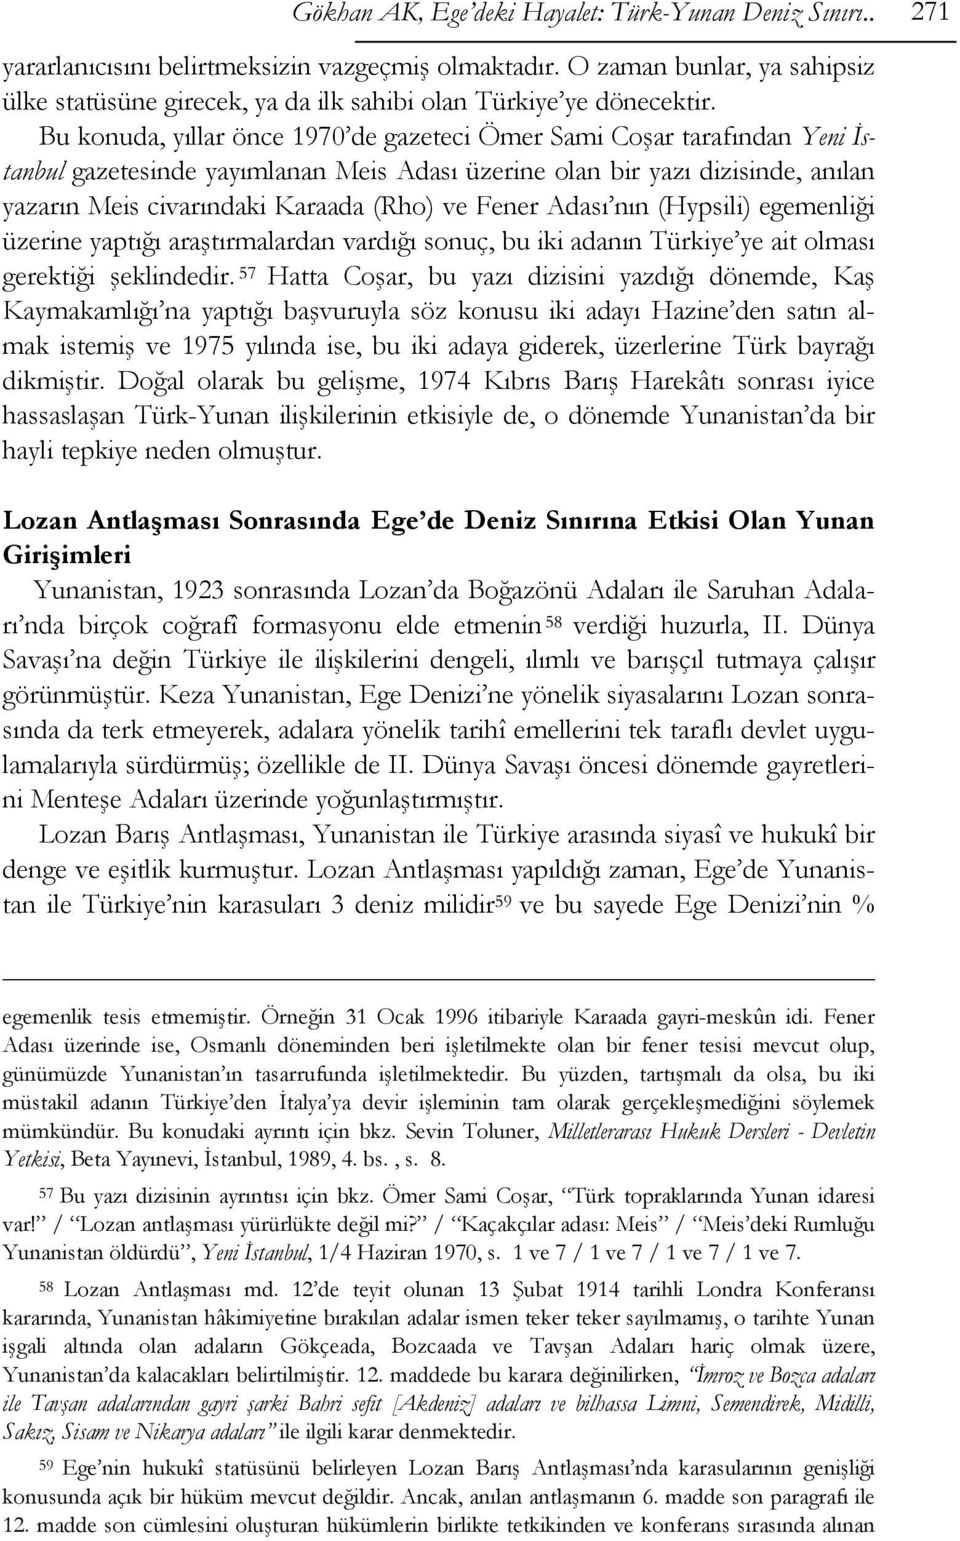 Bu konuda, yıllar önce 1970 de gazeteci Ömer Sami Coşar tarafından Yeni İstanbul gazetesinde yayımlanan Meis Adası üzerine olan bir yazı dizisinde, anılan yazarın Meis civarındaki Karaada (Rho) ve